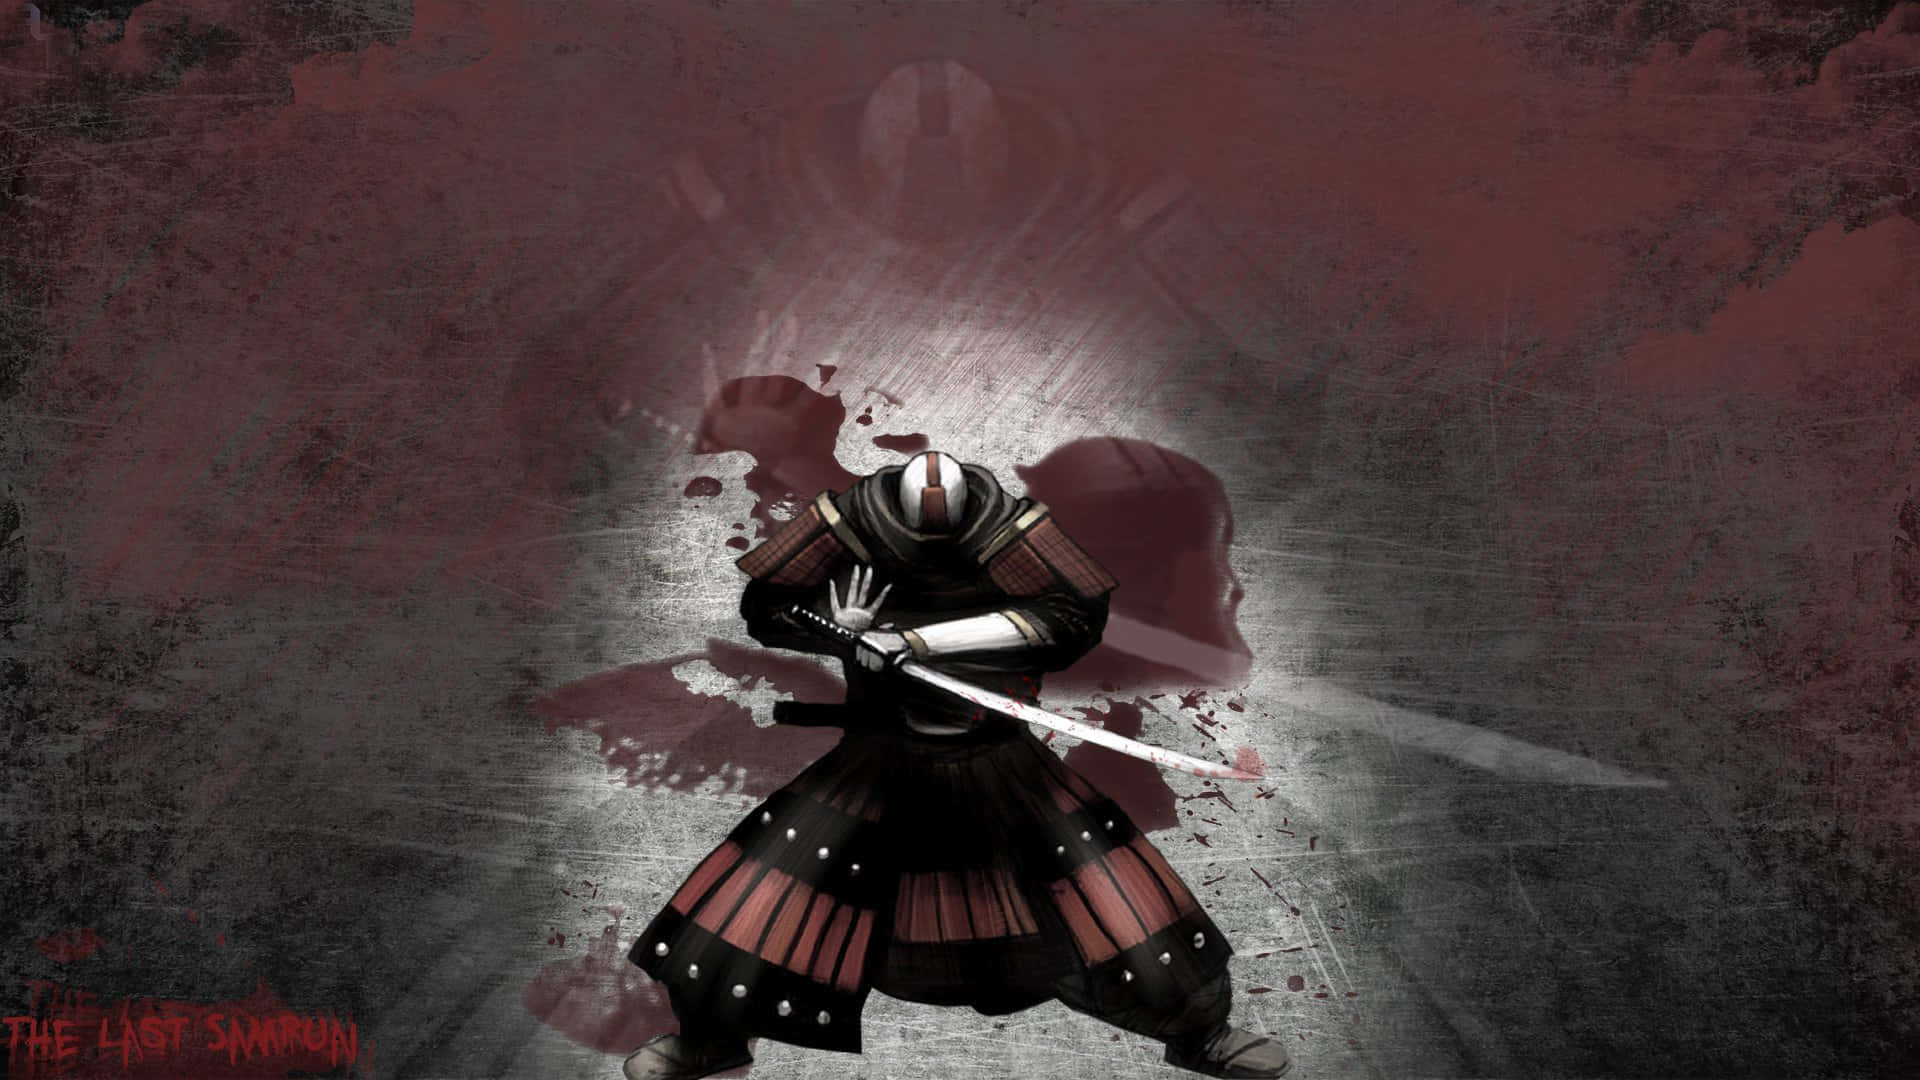 Samuraix, Der Entschlossene Krieger, Der Frieden Und Gerechtigkeit Verteidigt.